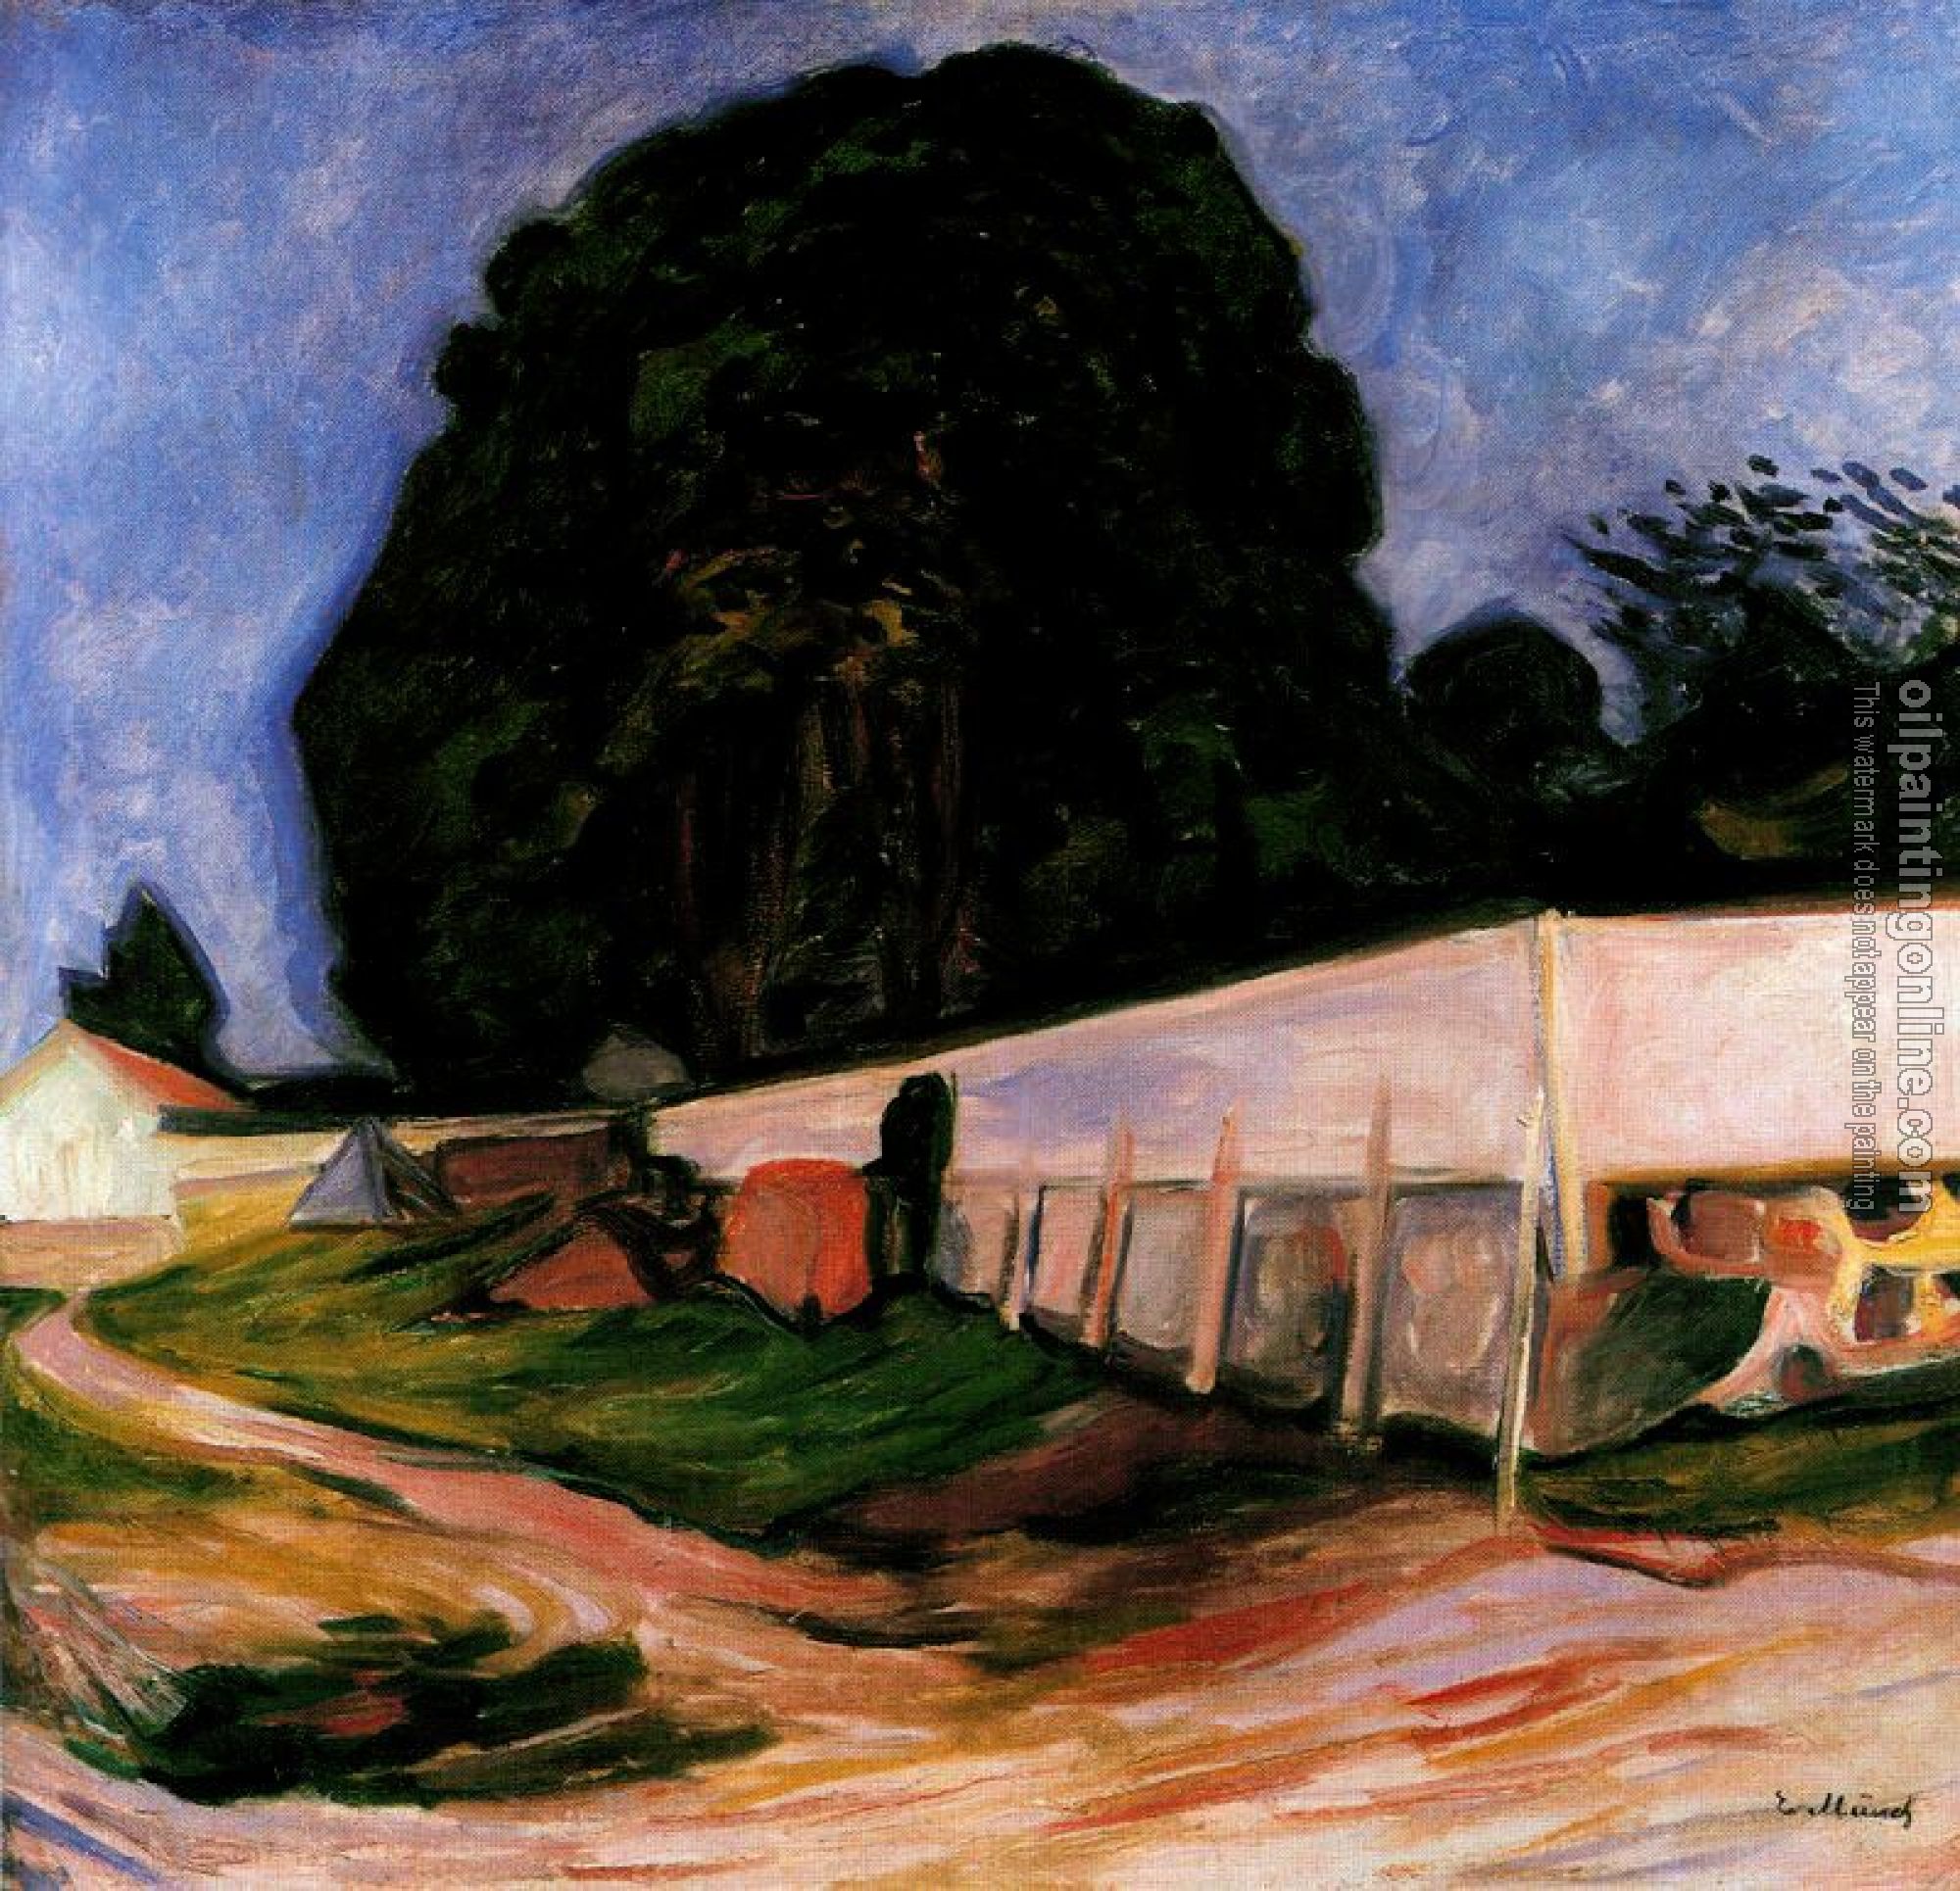 Munch, Edvard - Summer Night at Aasgaardstrand